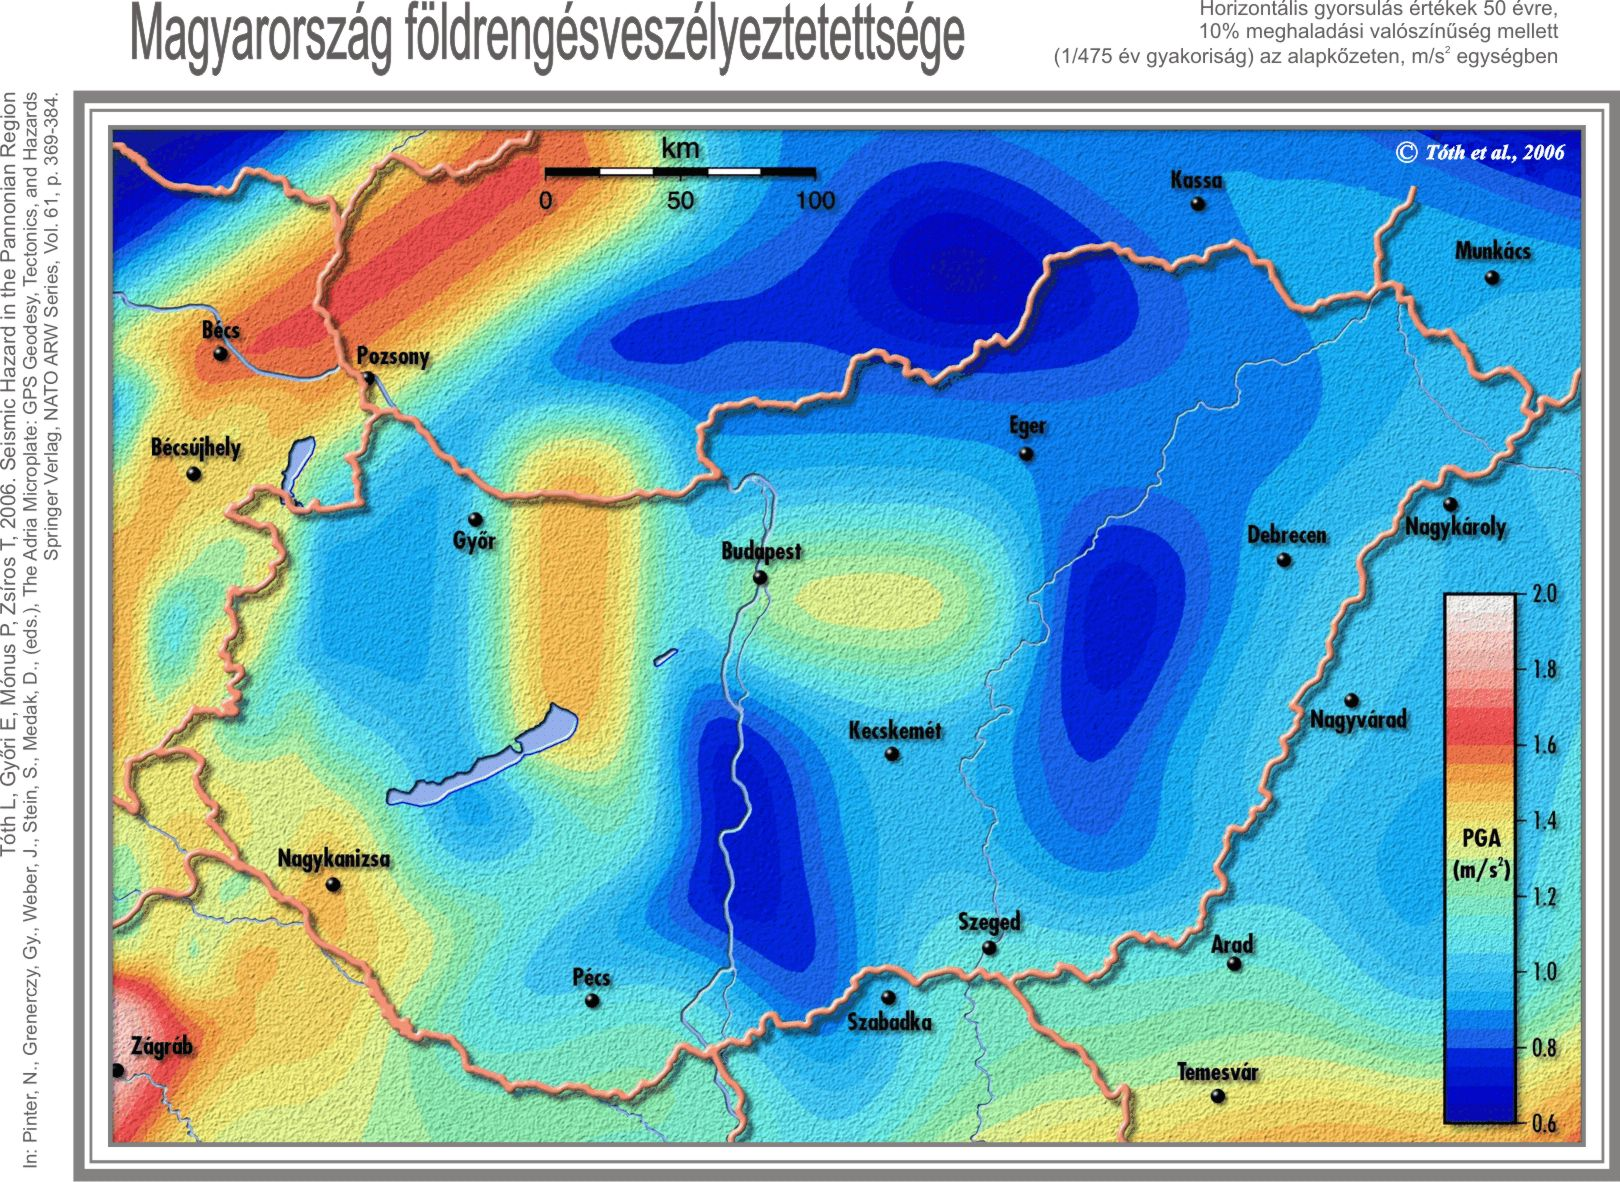 3.1. ábra. Magyarország földrengésveszélyeztettsége [20]